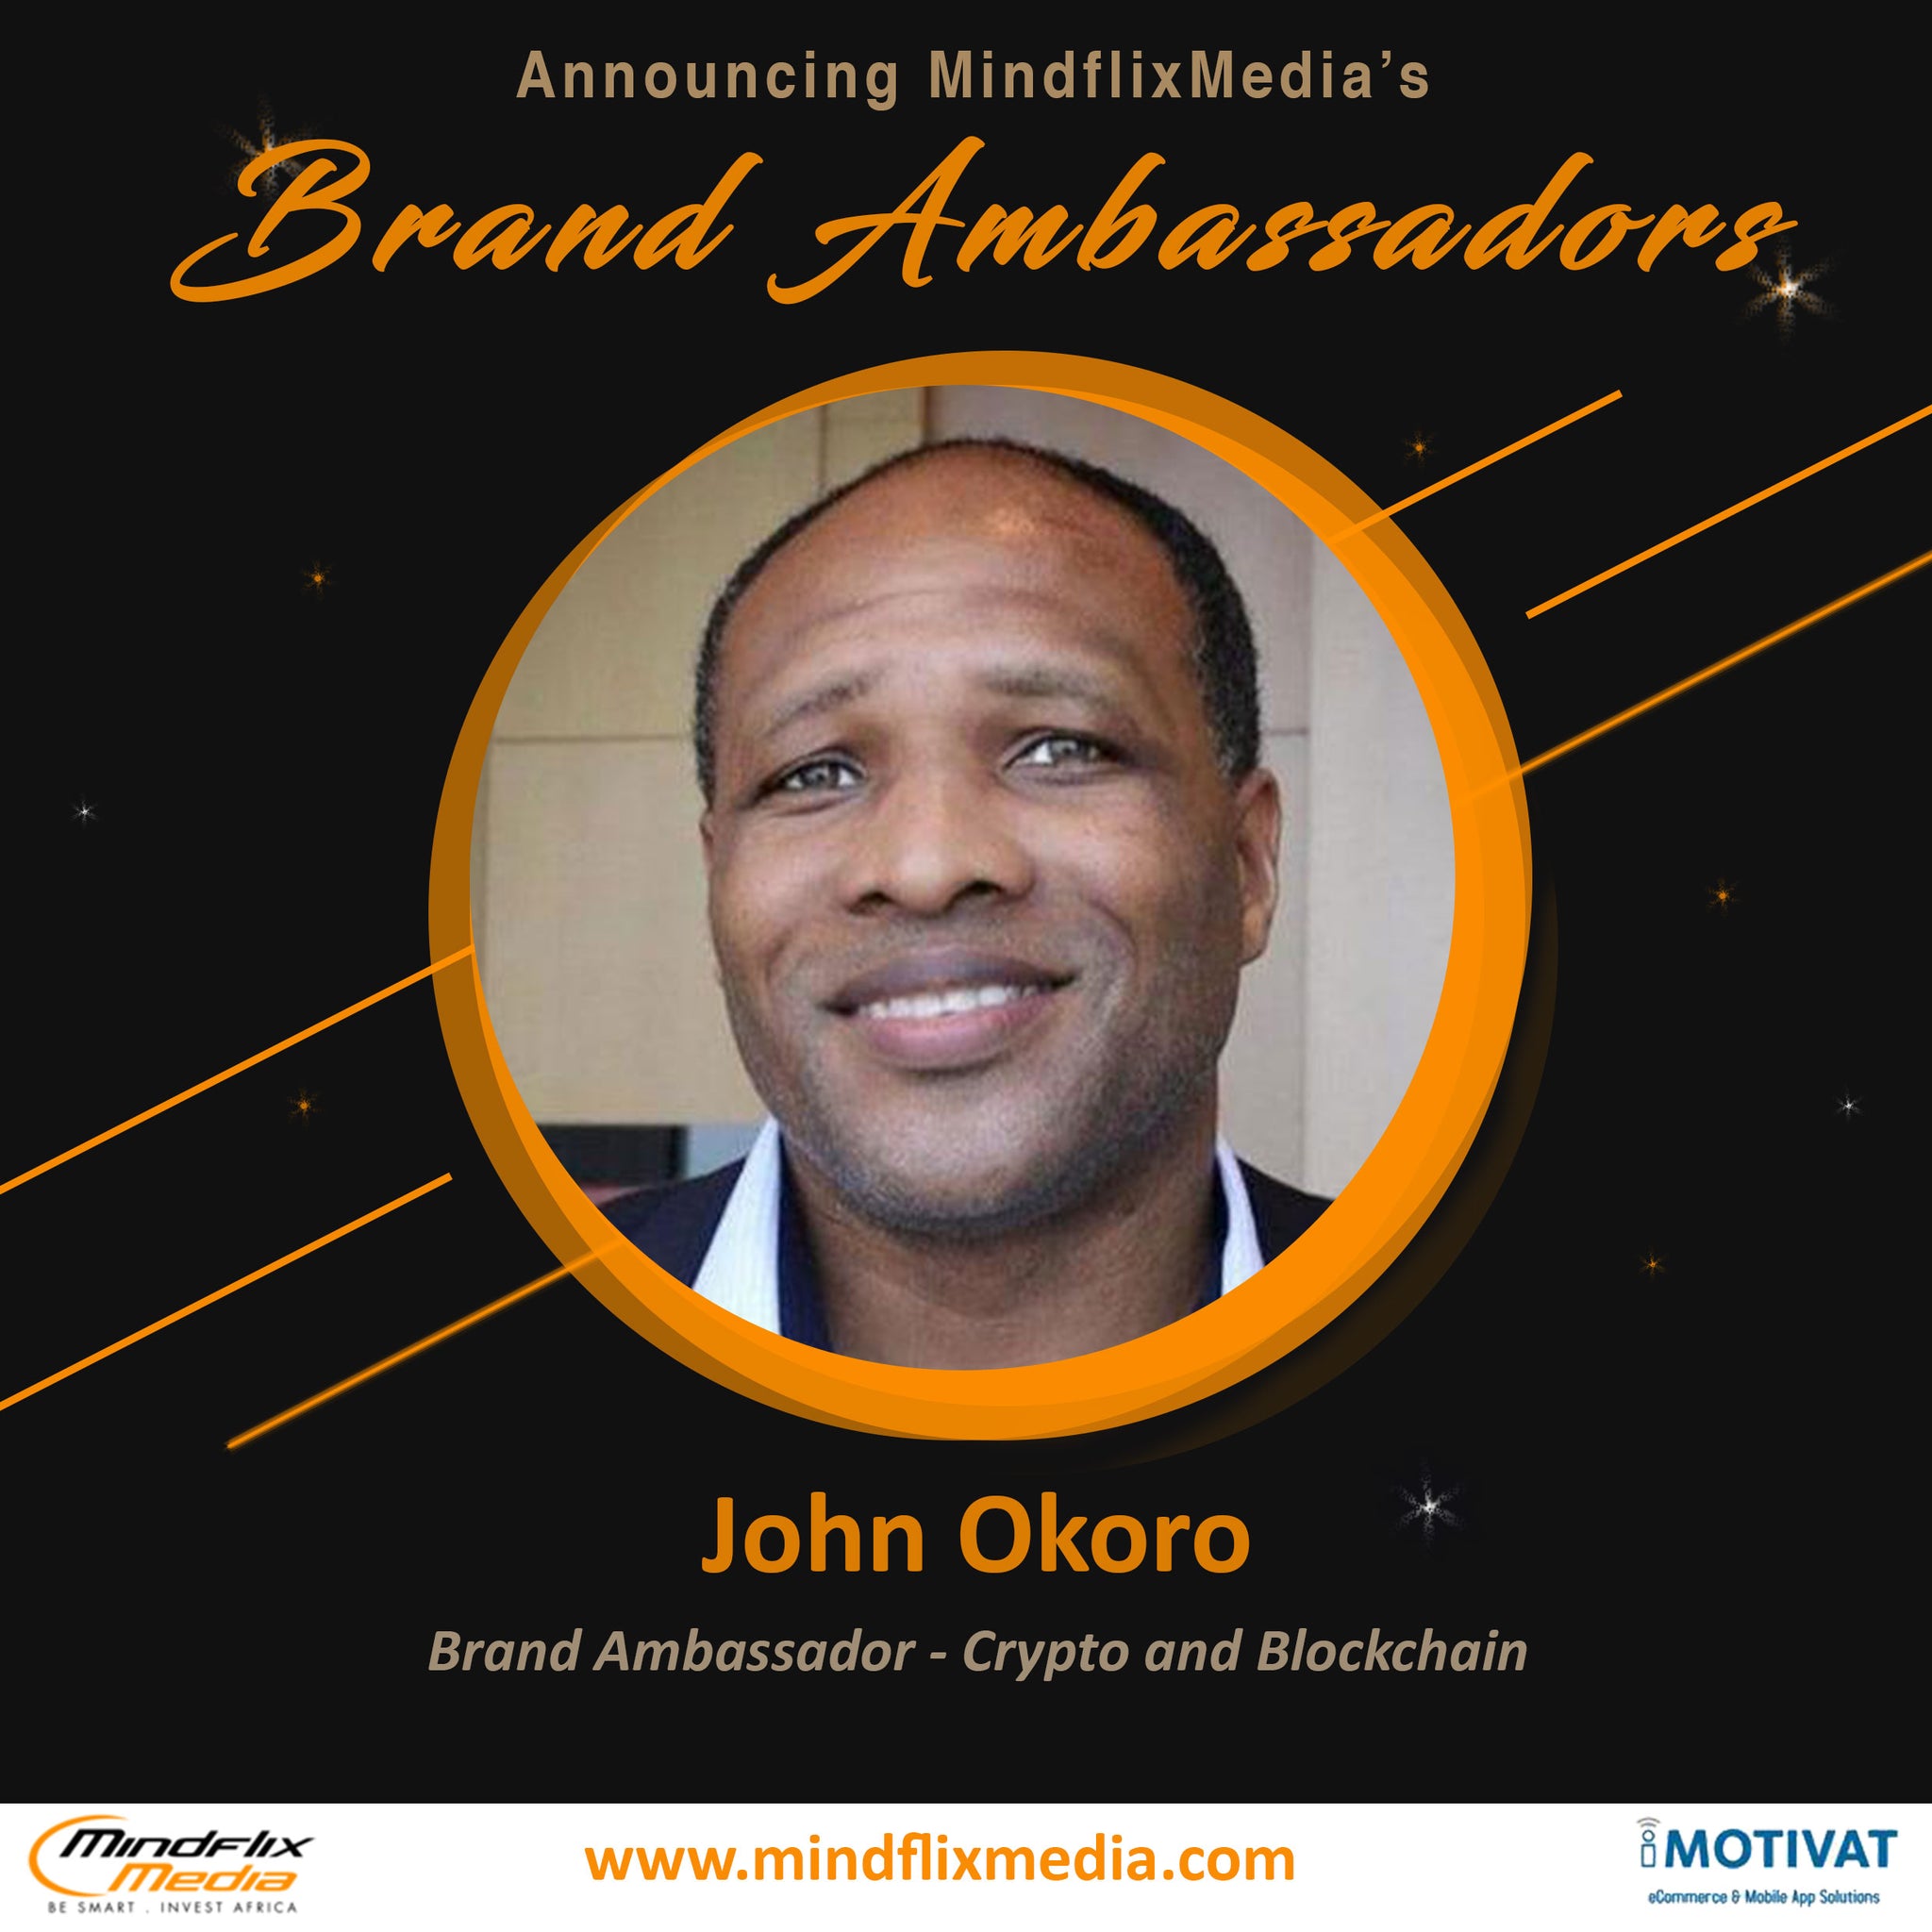 John Okoro - Brand Ambassador - Crypto and Blockchain